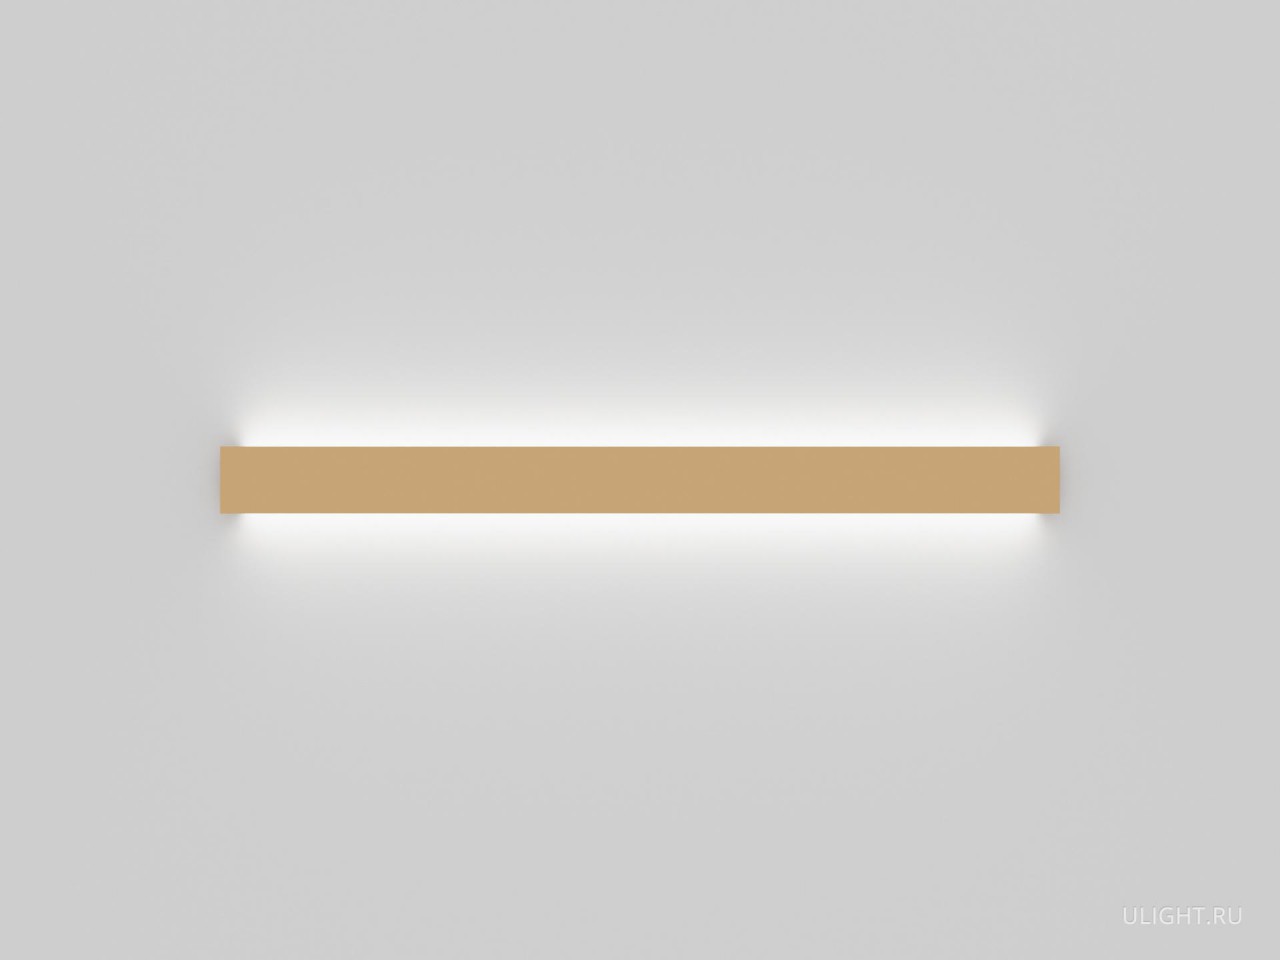 Линейный светильник для настенного монтажа выполнен из окрашенного алюминия. Светодиодные полосы, закрытые матовым рассеивателем, направляют вверх и вниз поток мягкого света.
